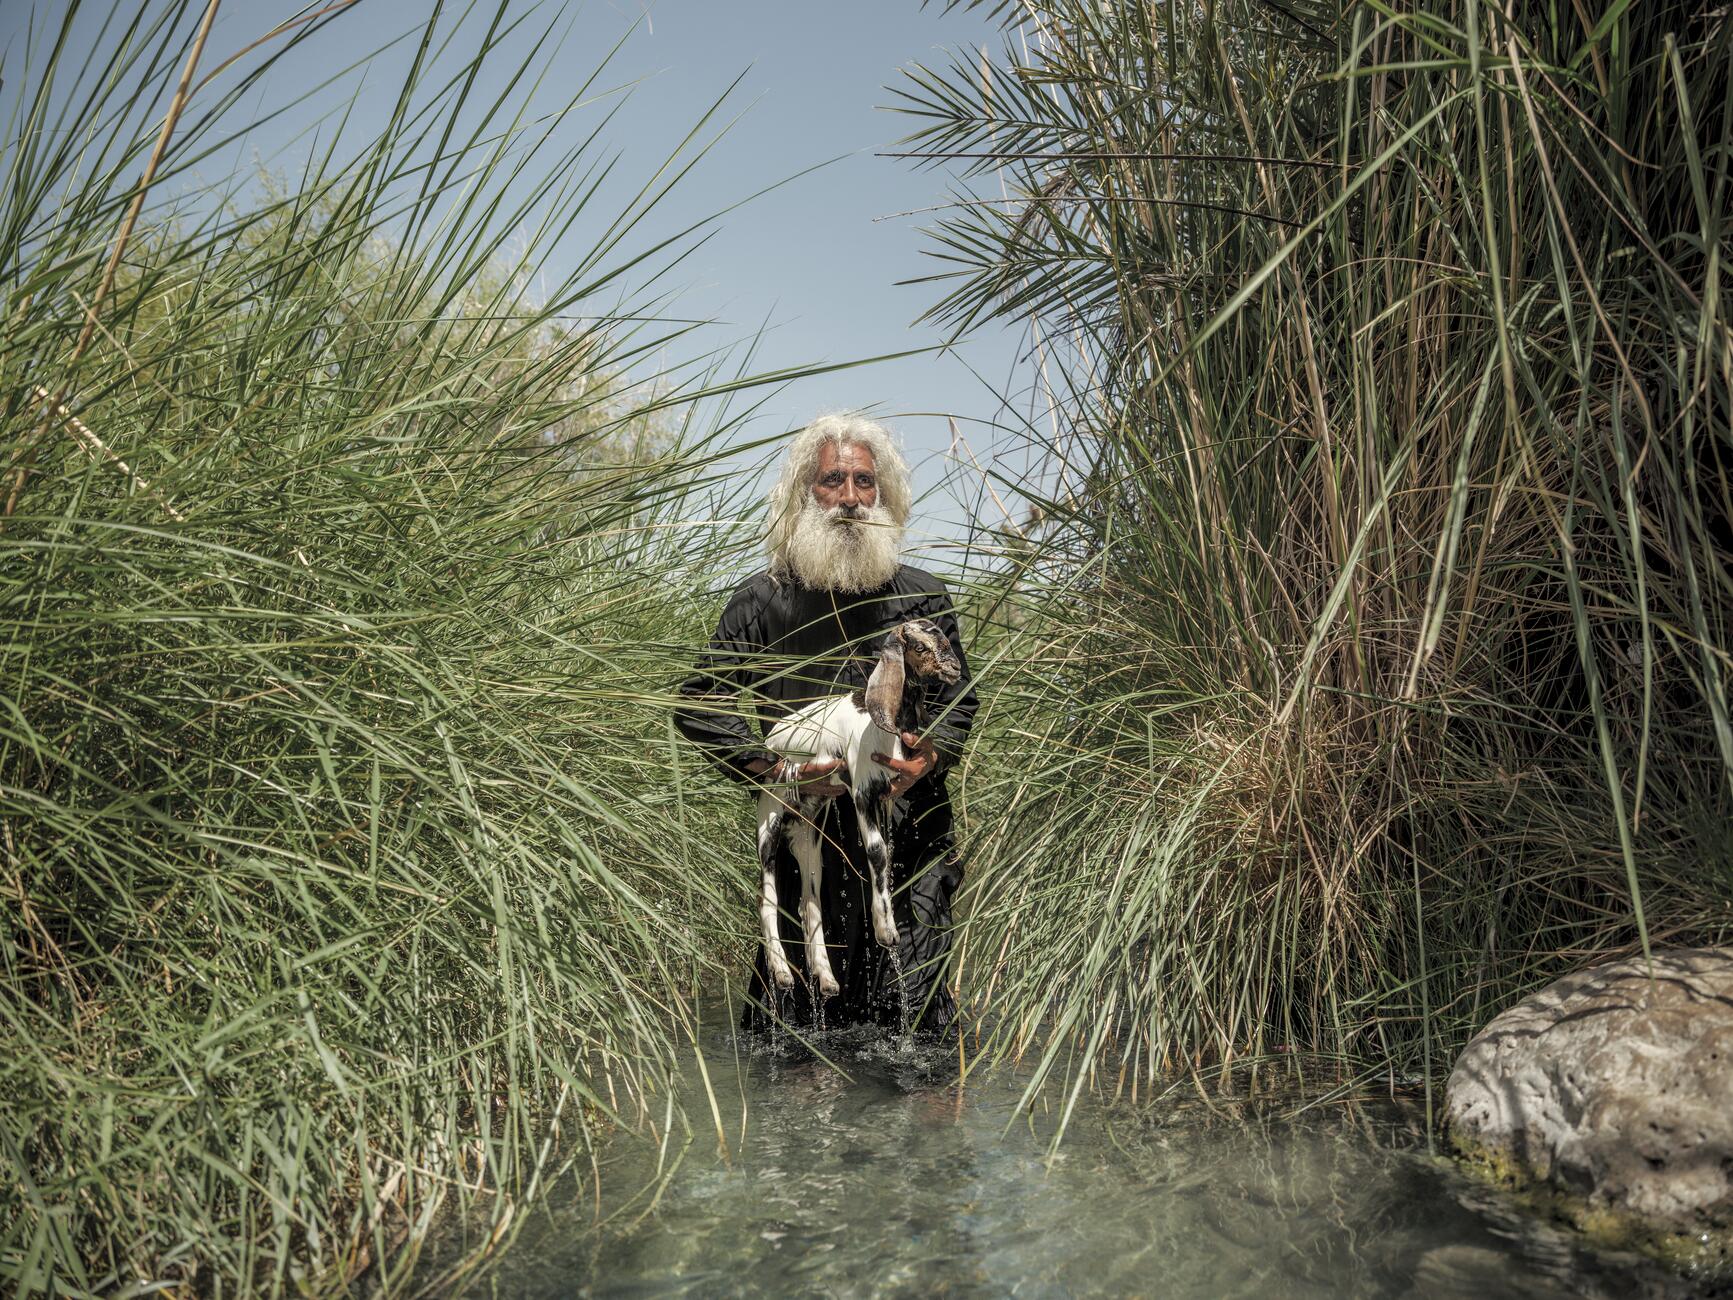 Фотография мужчины с длинными белыми волосами и большой белой бородой, одетого в черную одежду, стоит по колено в воде, окруженный очень высокой травой, и держит маленькую козу